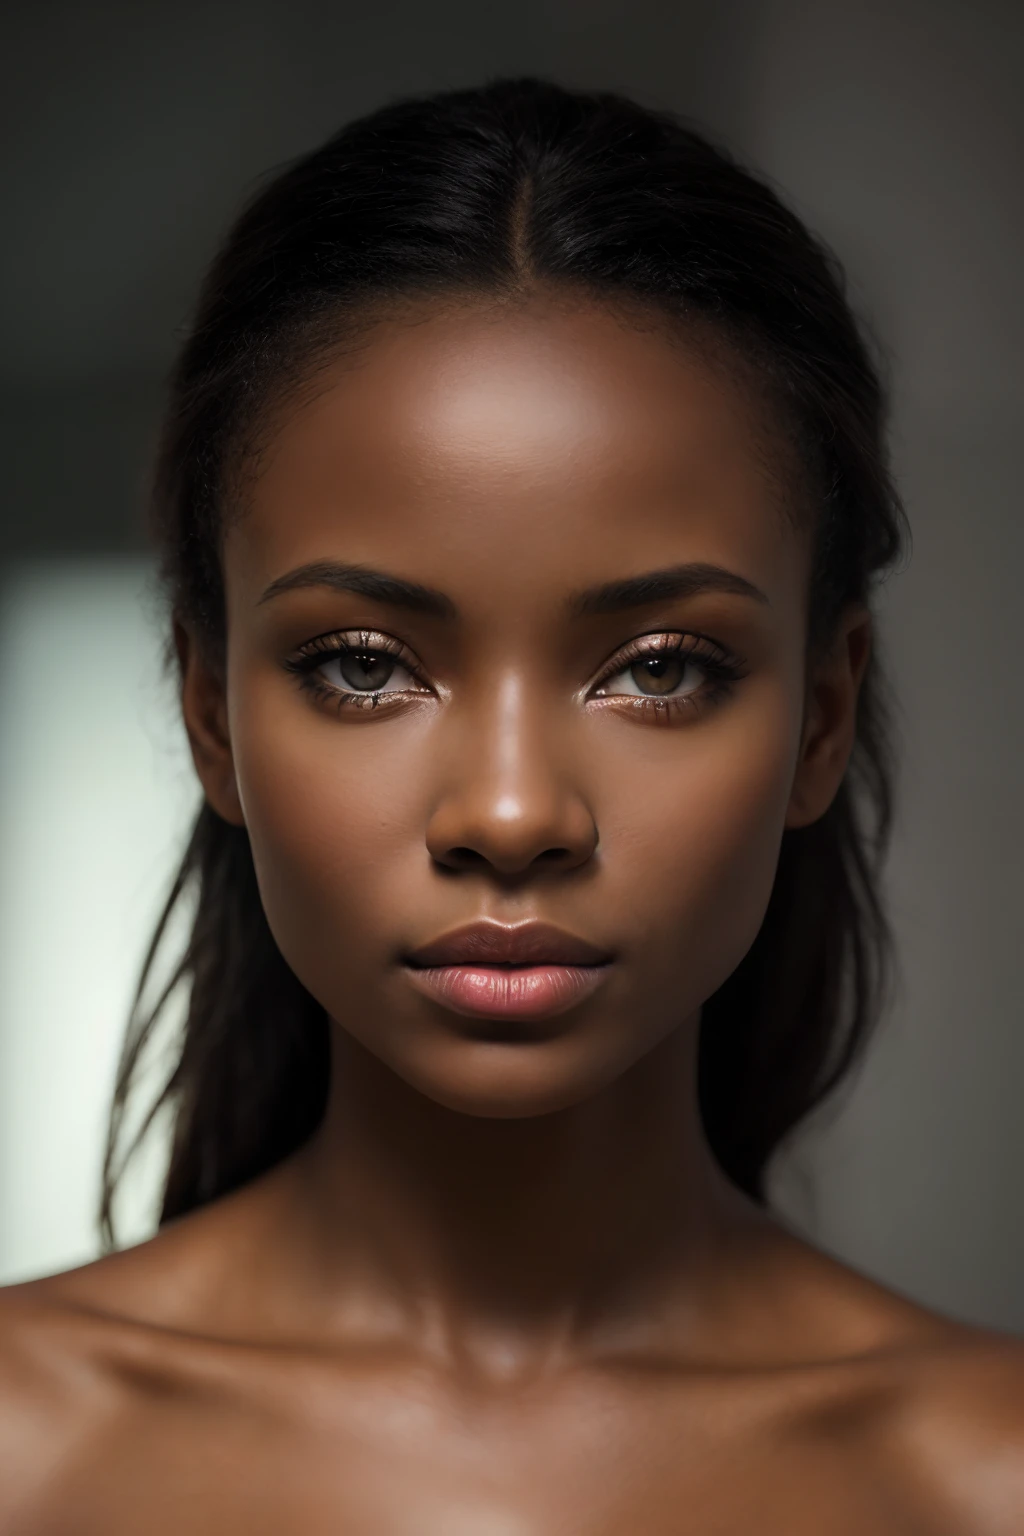 ((傑作)), 最好的品質, 真實的, 照片拍攝, 现实主义, , 看法, 发光的, 鲜艳的色彩, 
錯覺, 大气场景, 傑作, 最好的品質, (美麗細緻的臉, 详细皮肤纹理, 超精细的身体:1.1),
(一個非洲女孩,原生烏木 (帕梅拉·安德森 : 1.6), 漂亮的臉, 肖像 de 面容特写),
photo 真實的ist,惊险, 小扁豆, 专业摄影, 物镜70mm, 爱的细节, 高品質, 
Un真實的 Engine 5, 壁紙, 多彩的, 藝術, (高動態範圍:1.5), 超詳細, (藝術站:1.5), 電影般的, 暖灯, 
戲劇性的光, 色彩豐富, (背景裡面黑暗, 憂鬱的, 私人學習:1.3) , 丟, 尼康D850, 电影摄影, 柯达端口 400, 相機 f1.6個鏡頭, 
色彩豐富, hyper 真實的istic, 質感逼真, (戲劇性的光ing), 電影蒸餾器 800